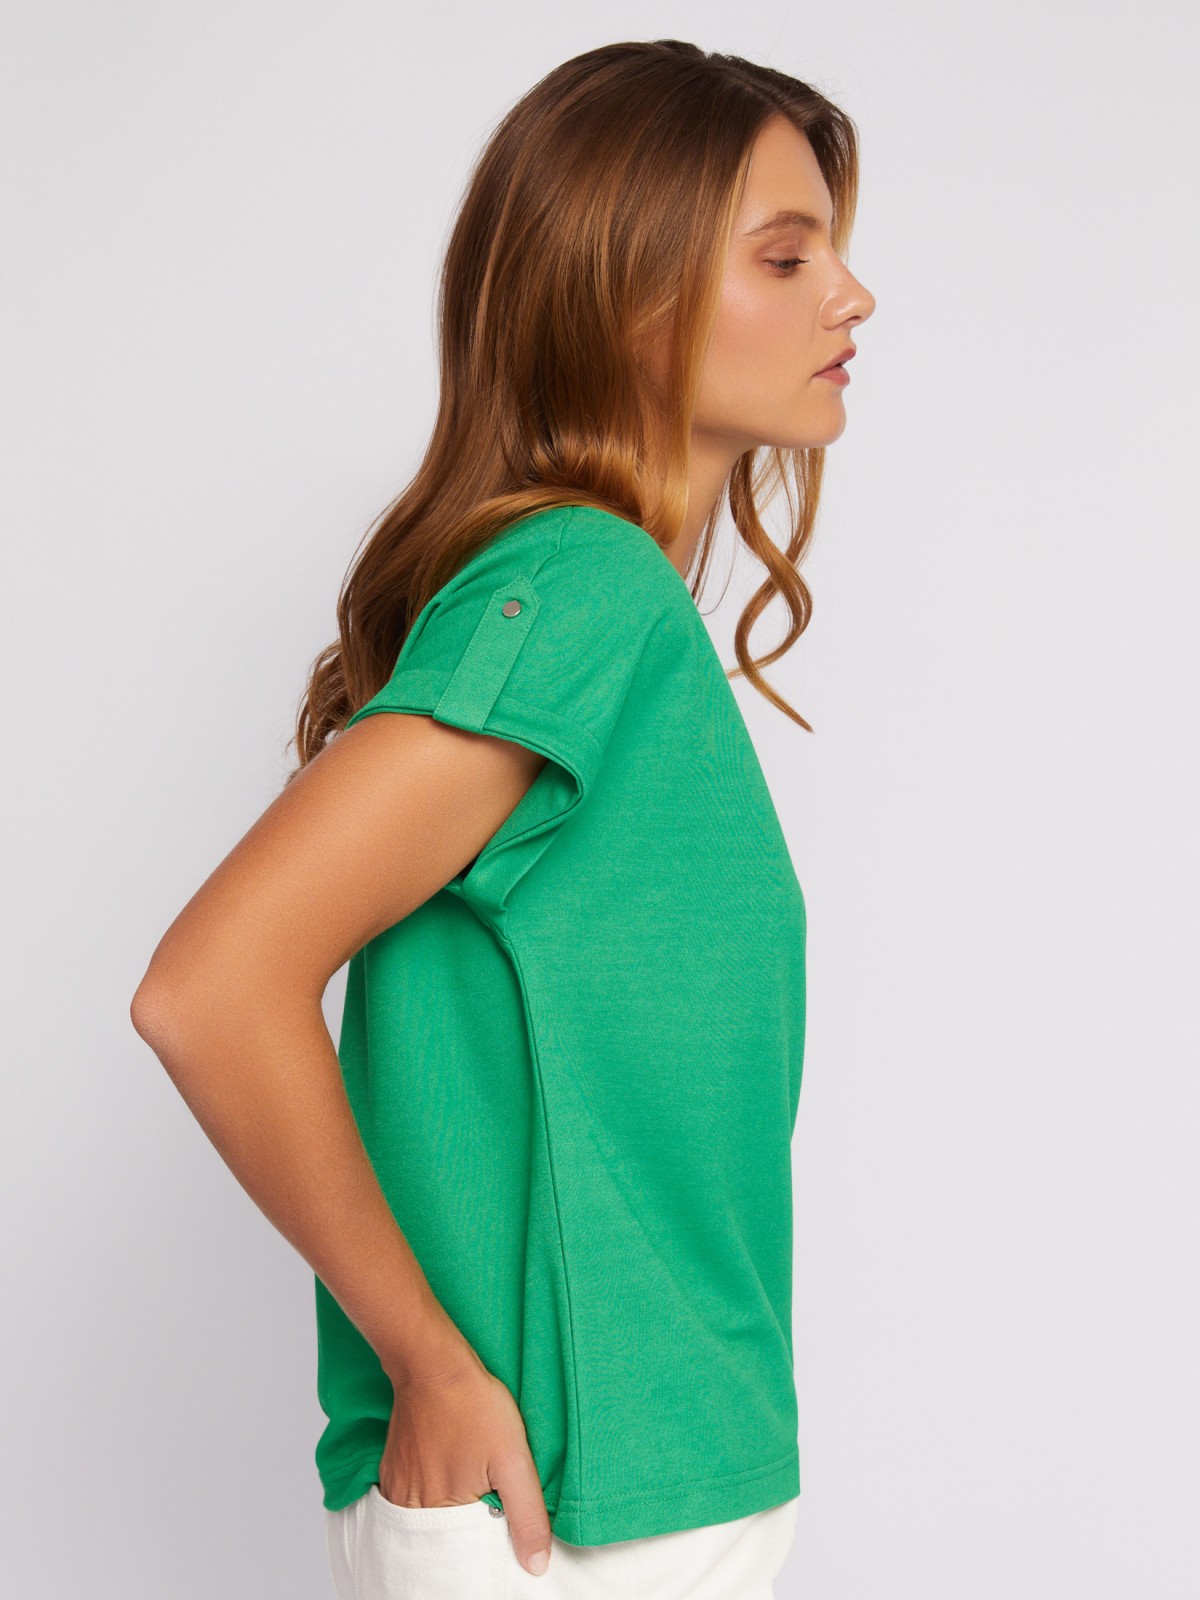 Блузка-футболка с коротким рукавом и брошью